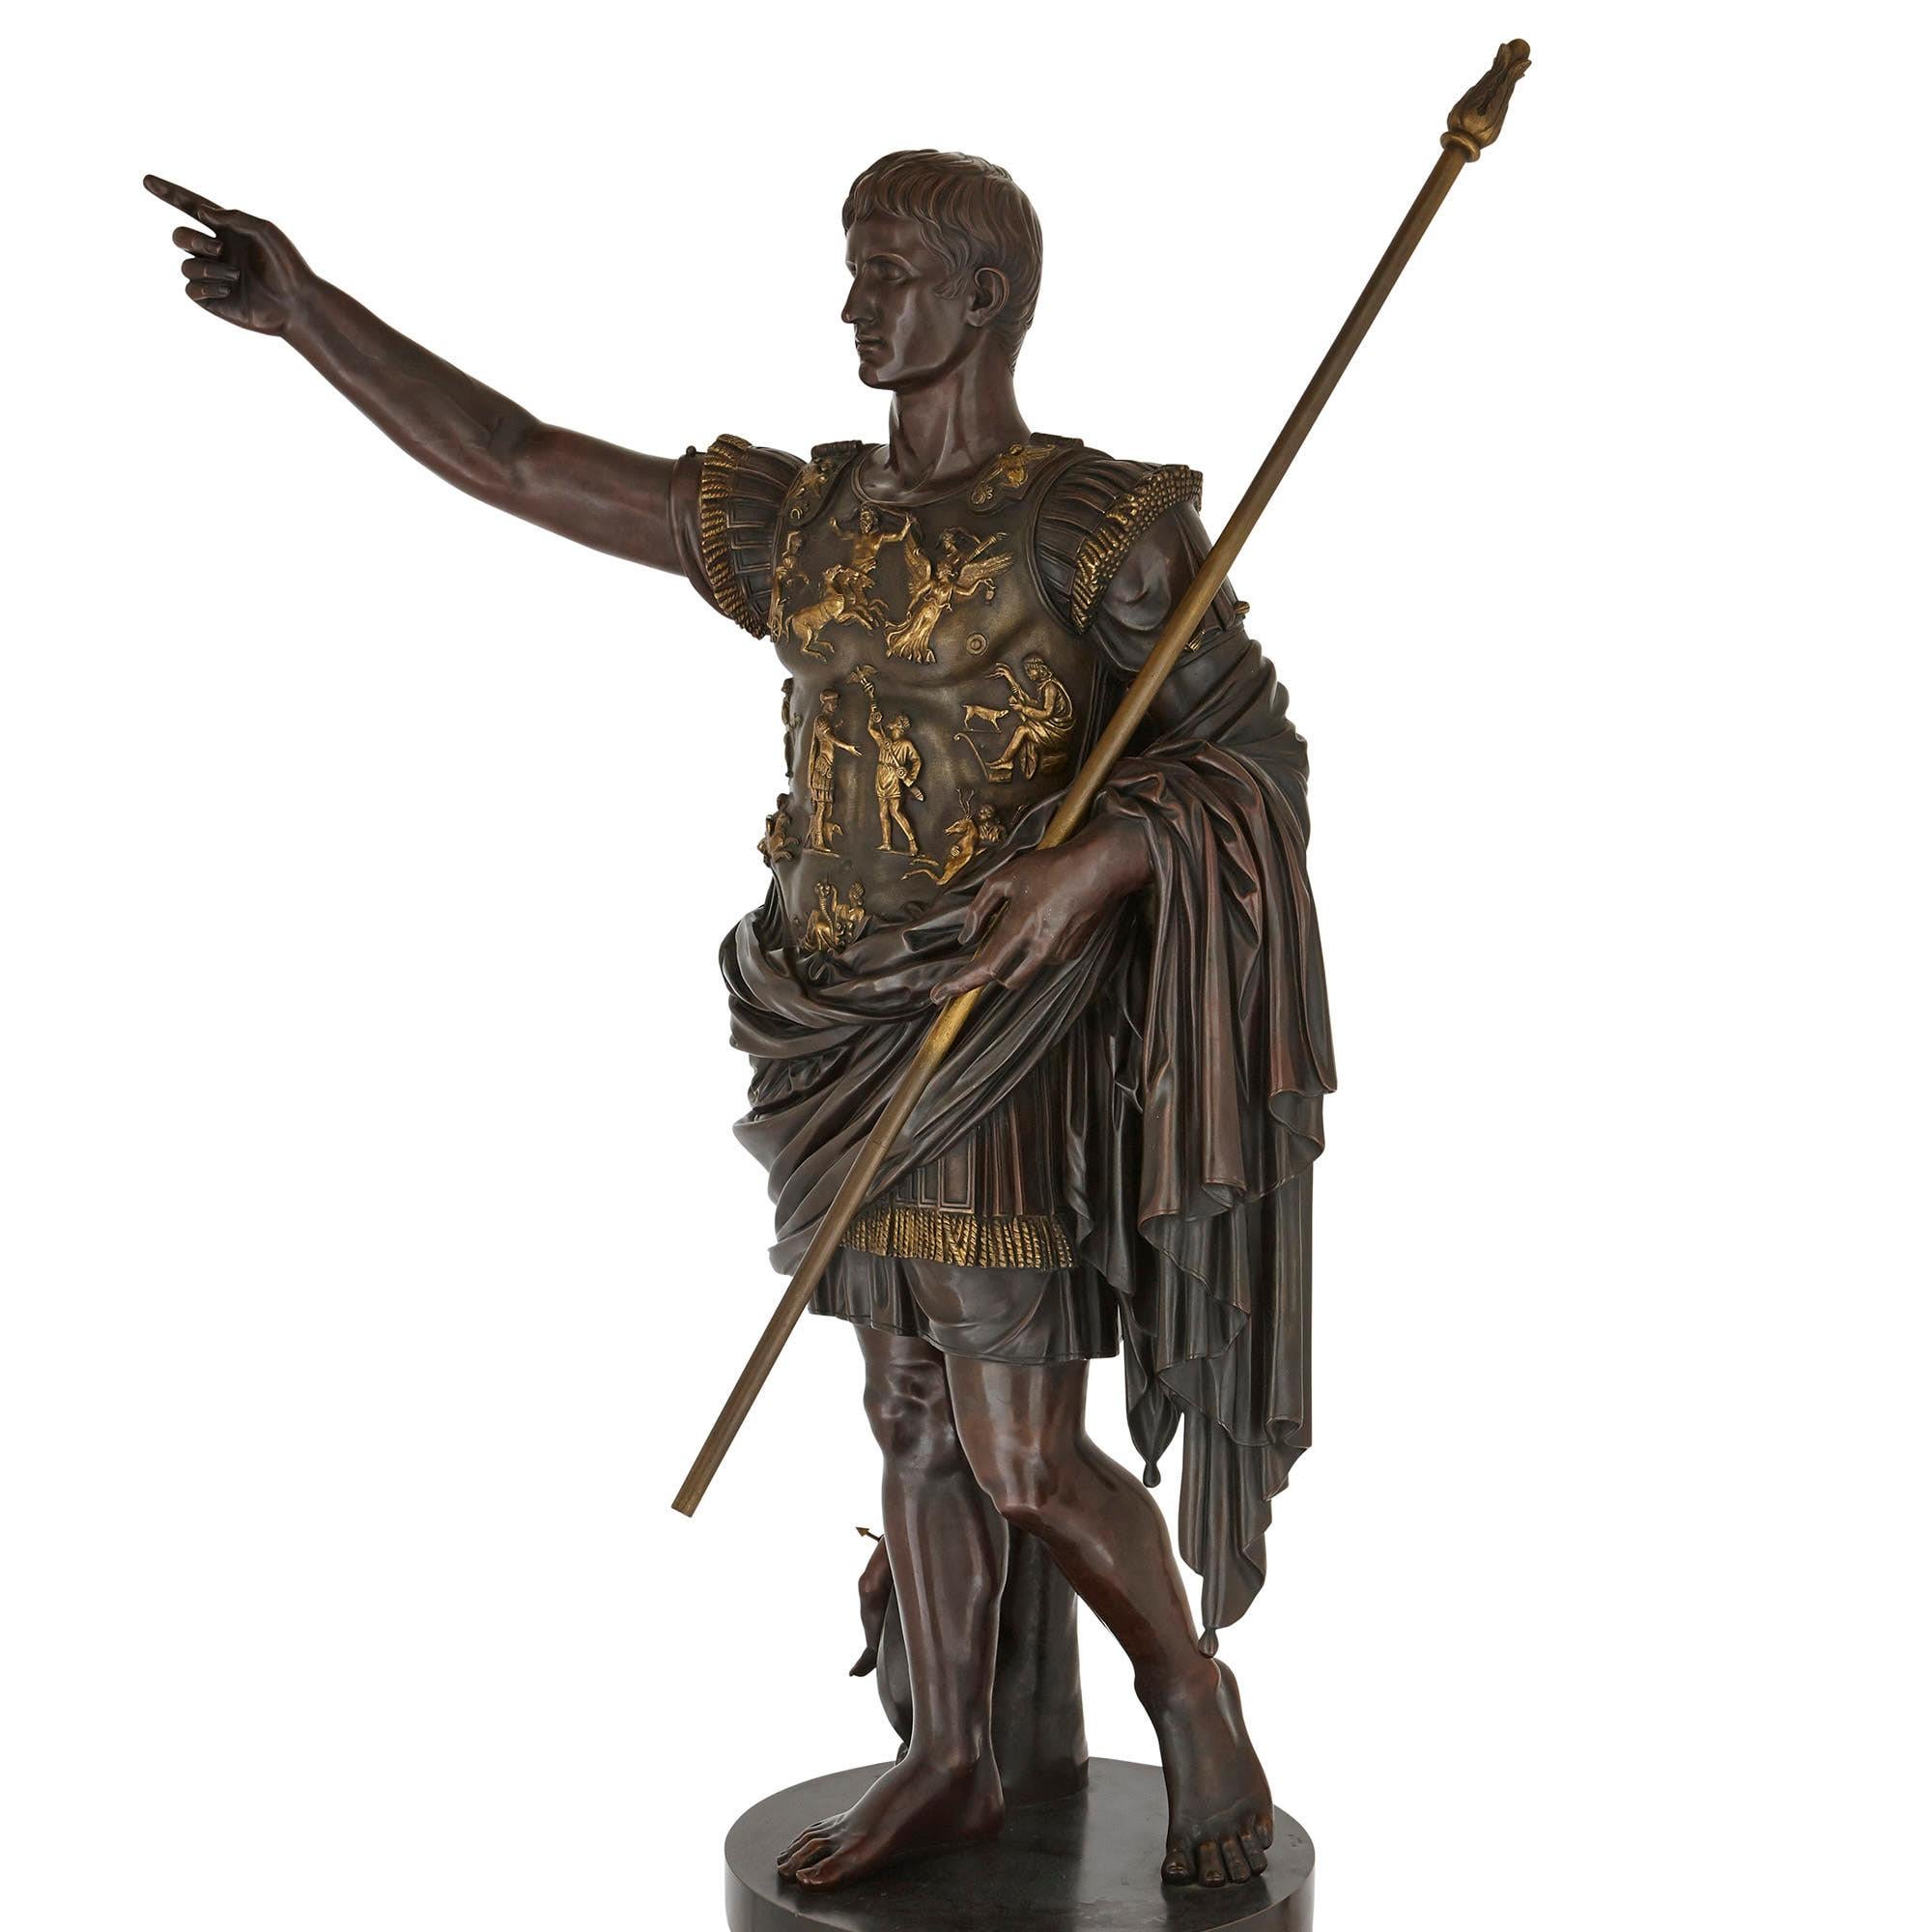 Die ursprüngliche Bronzeversion dieser Skulptur, die als Augustus von Prima Porta